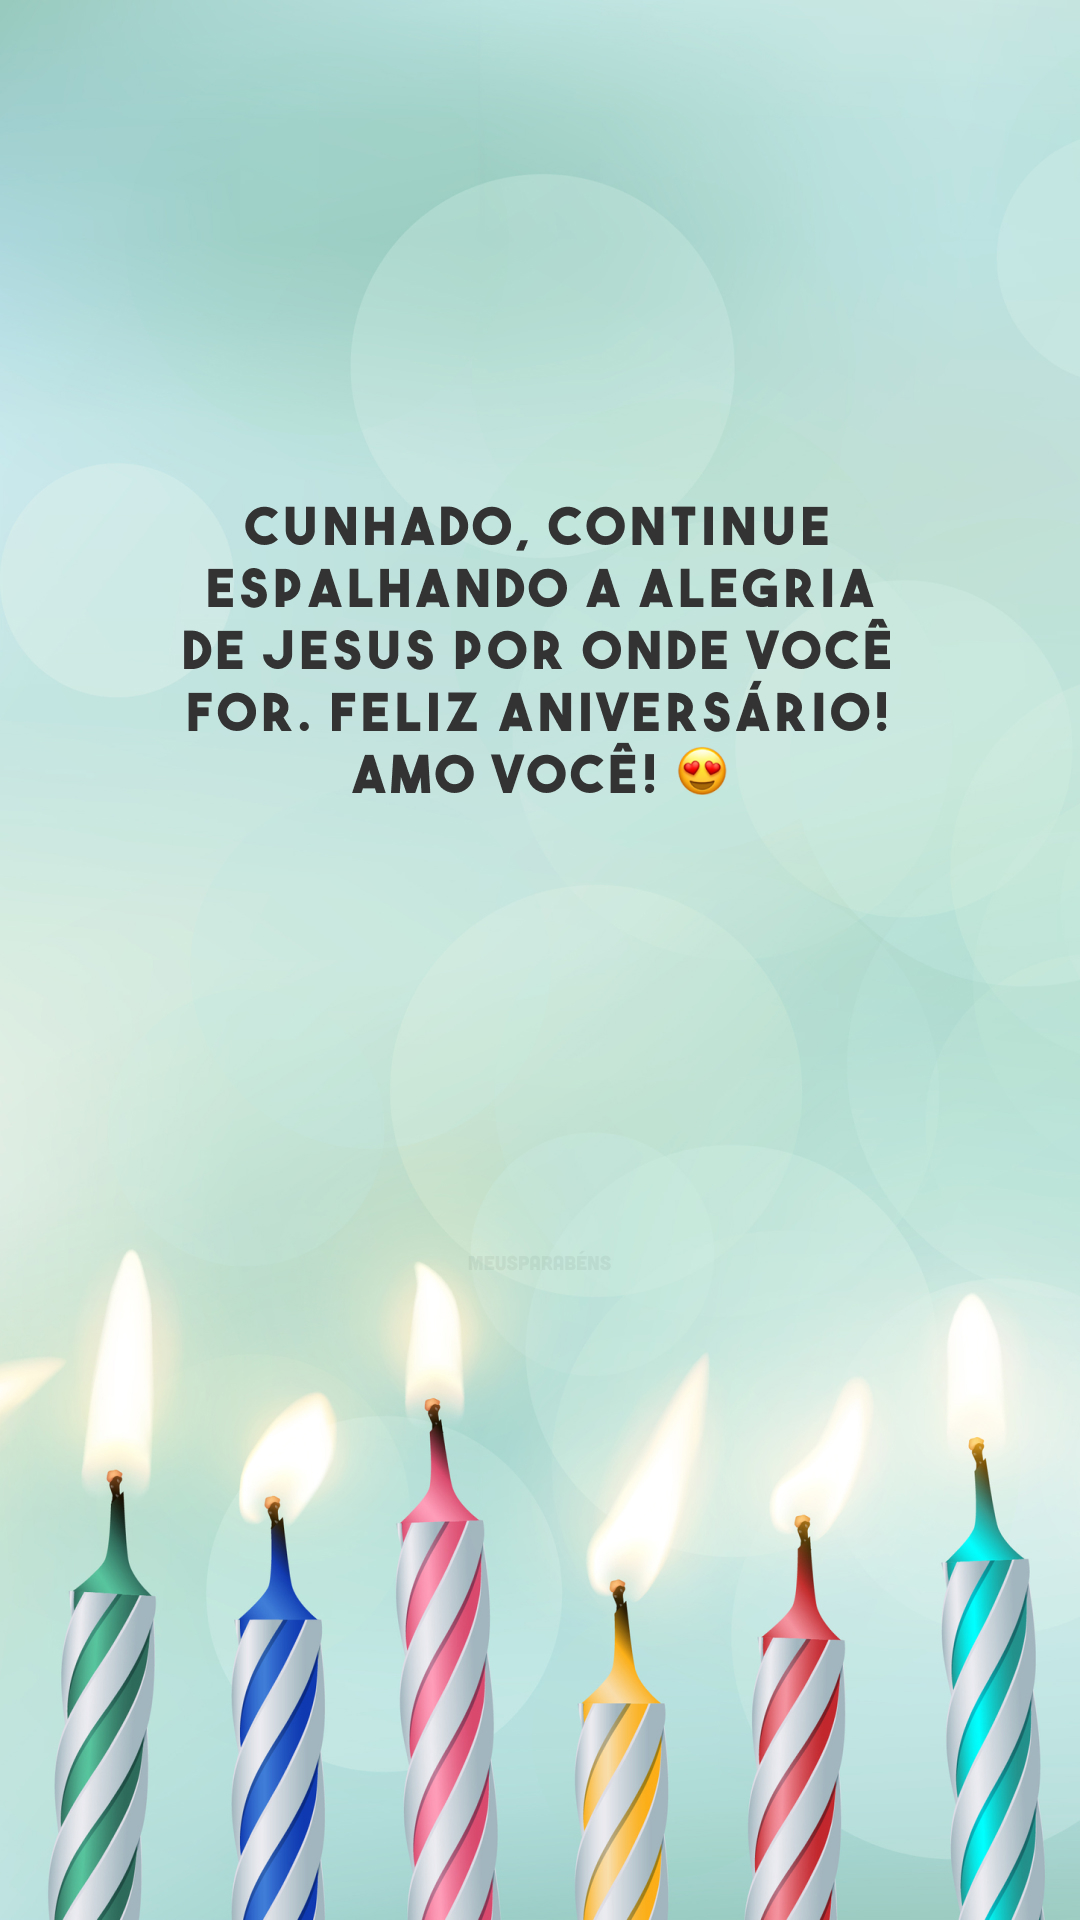 Cunhado, continue espalhando a alegria de Jesus por onde você for. Feliz aniversário! Amo você! 😍